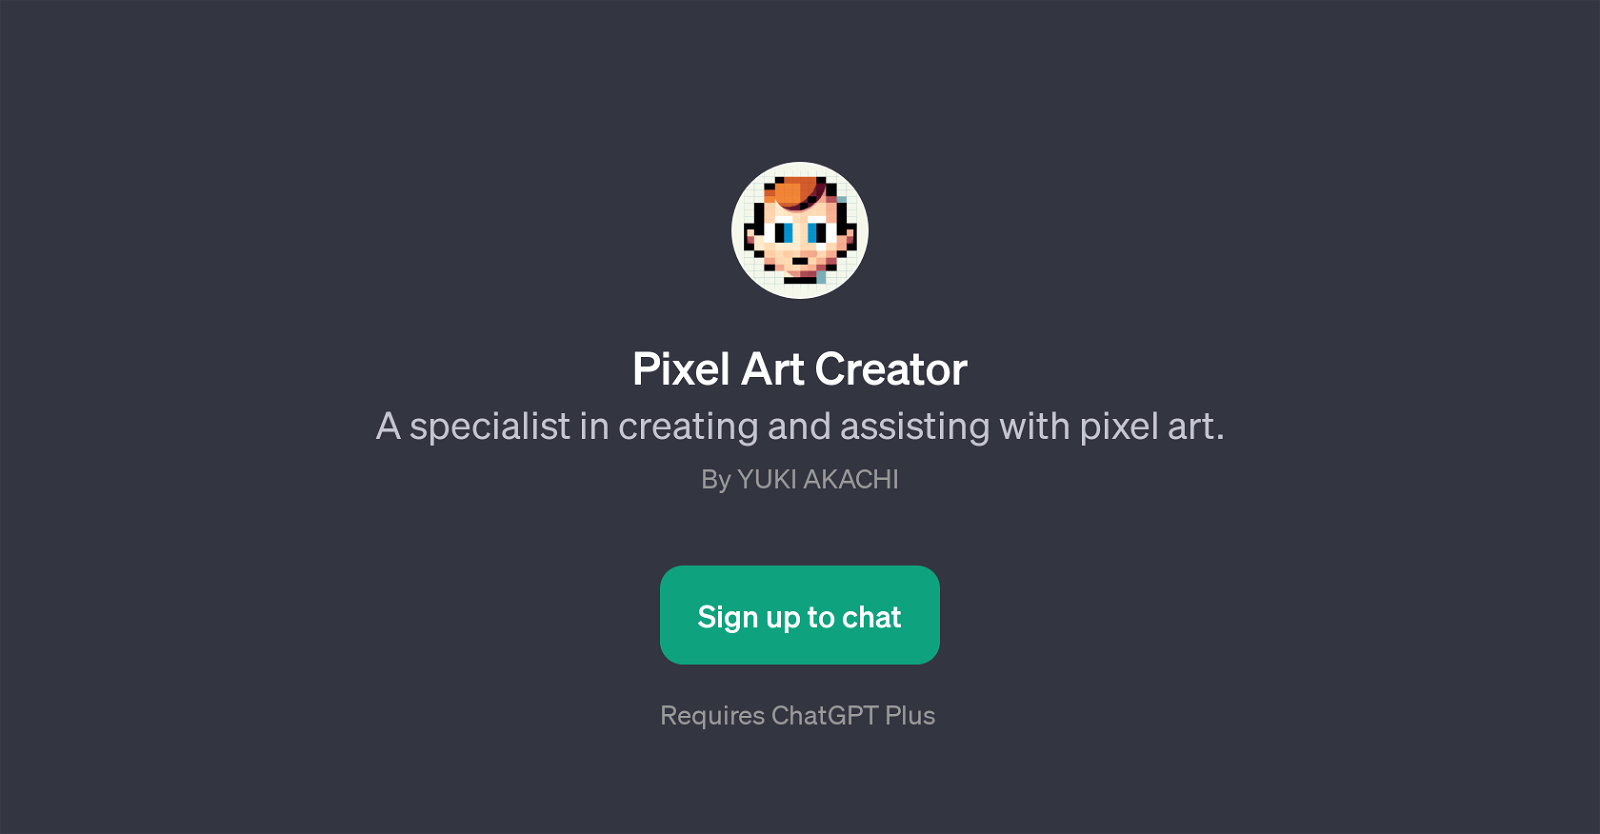 Pixel Art Creator website